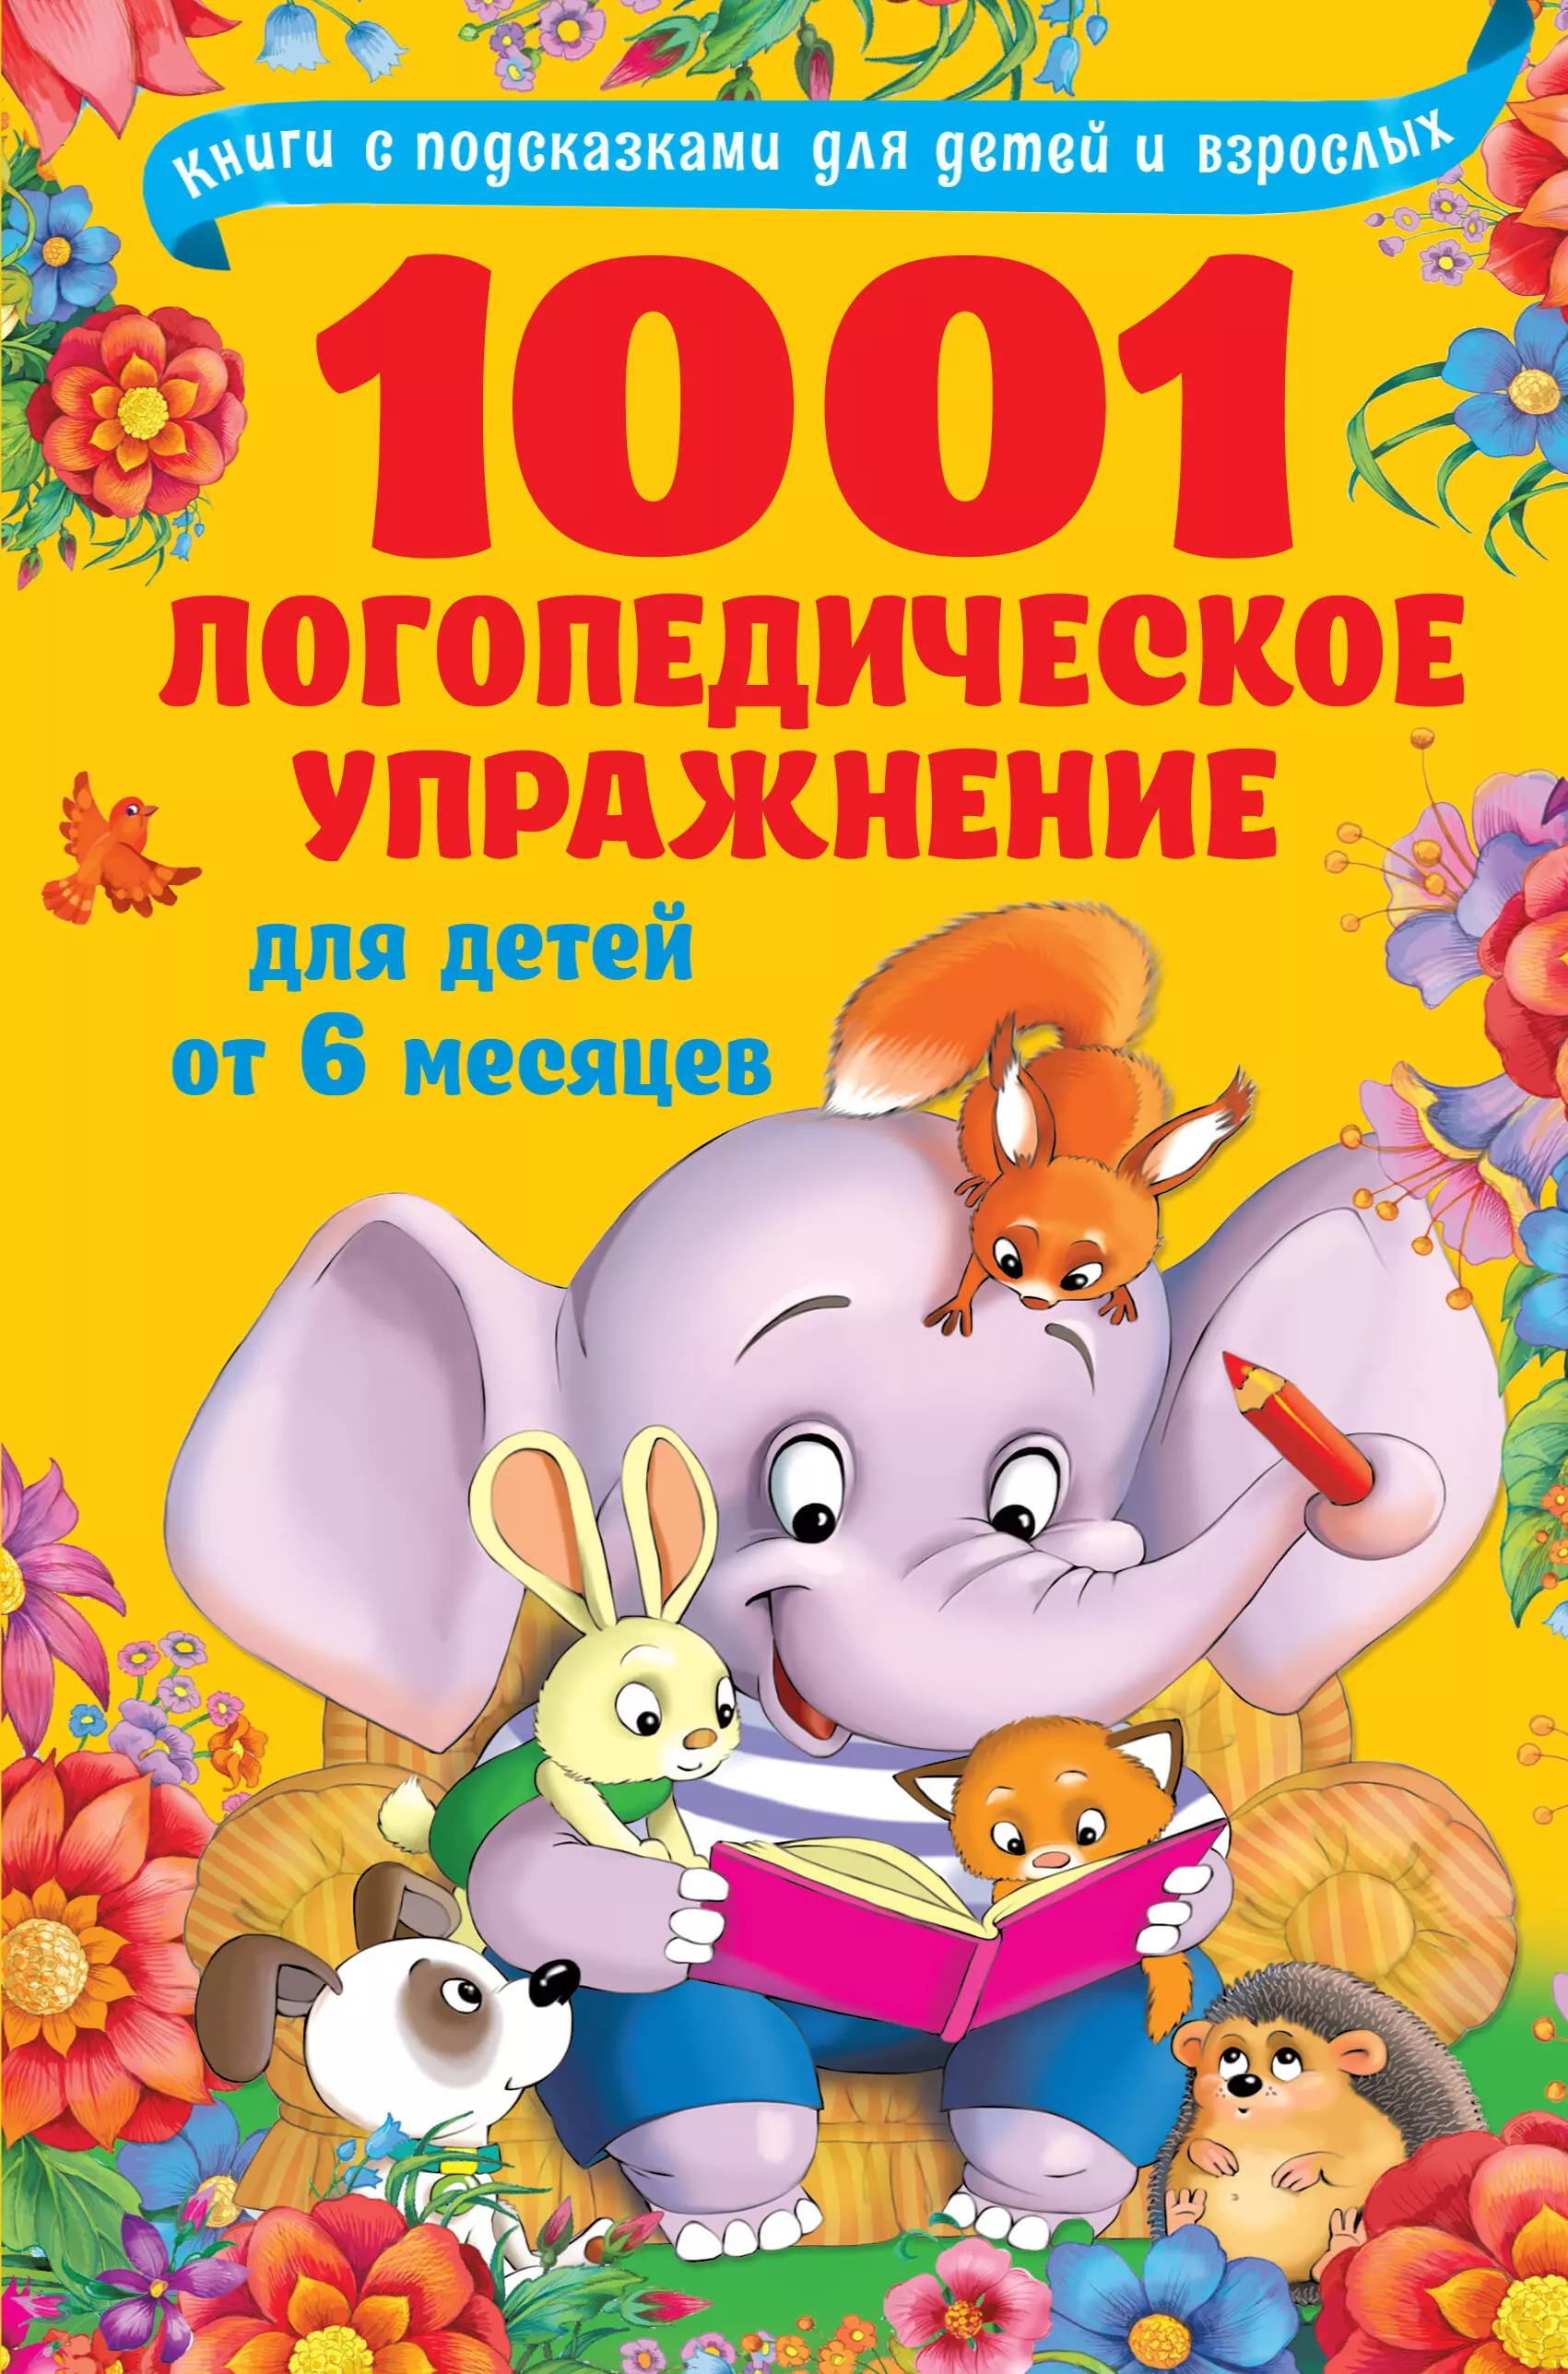 Новиковская Ольга Андреевна - 1001 логопедическое упражнение для детей от 6 месяцев